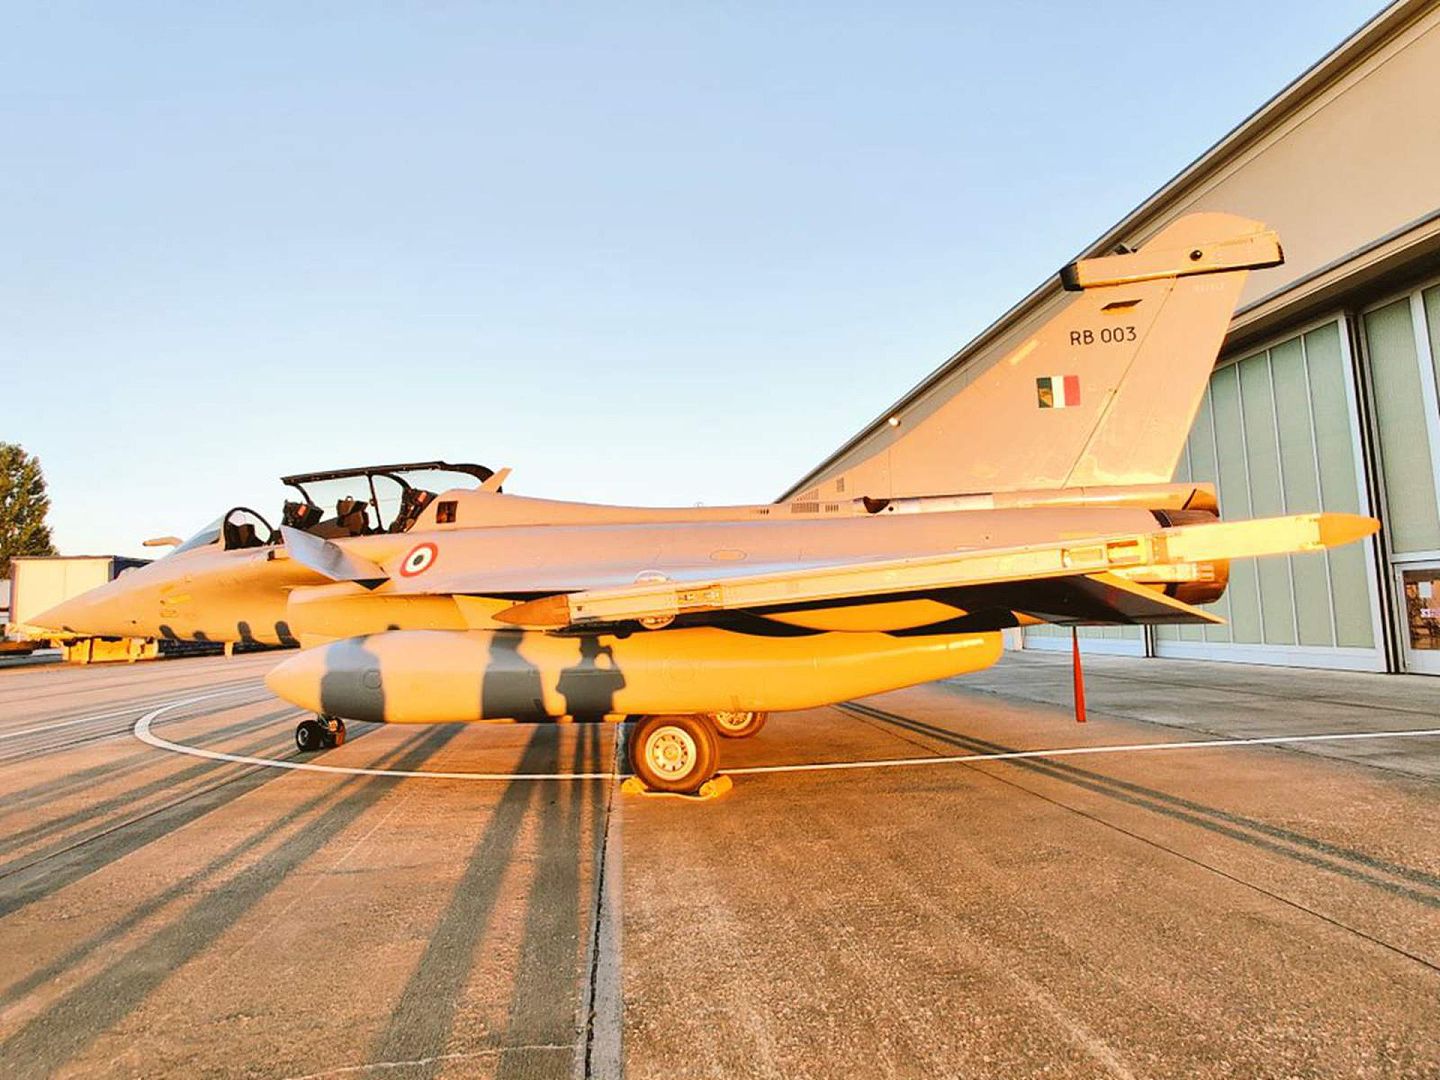 “阵风”战斗机被形容为印度空军的“游戏规则改变者”，因为这款战斗机将显著提升印度空军的战斗实力。这款战斗机装备了一系列先进的强大武器。（Twitter@India in France）